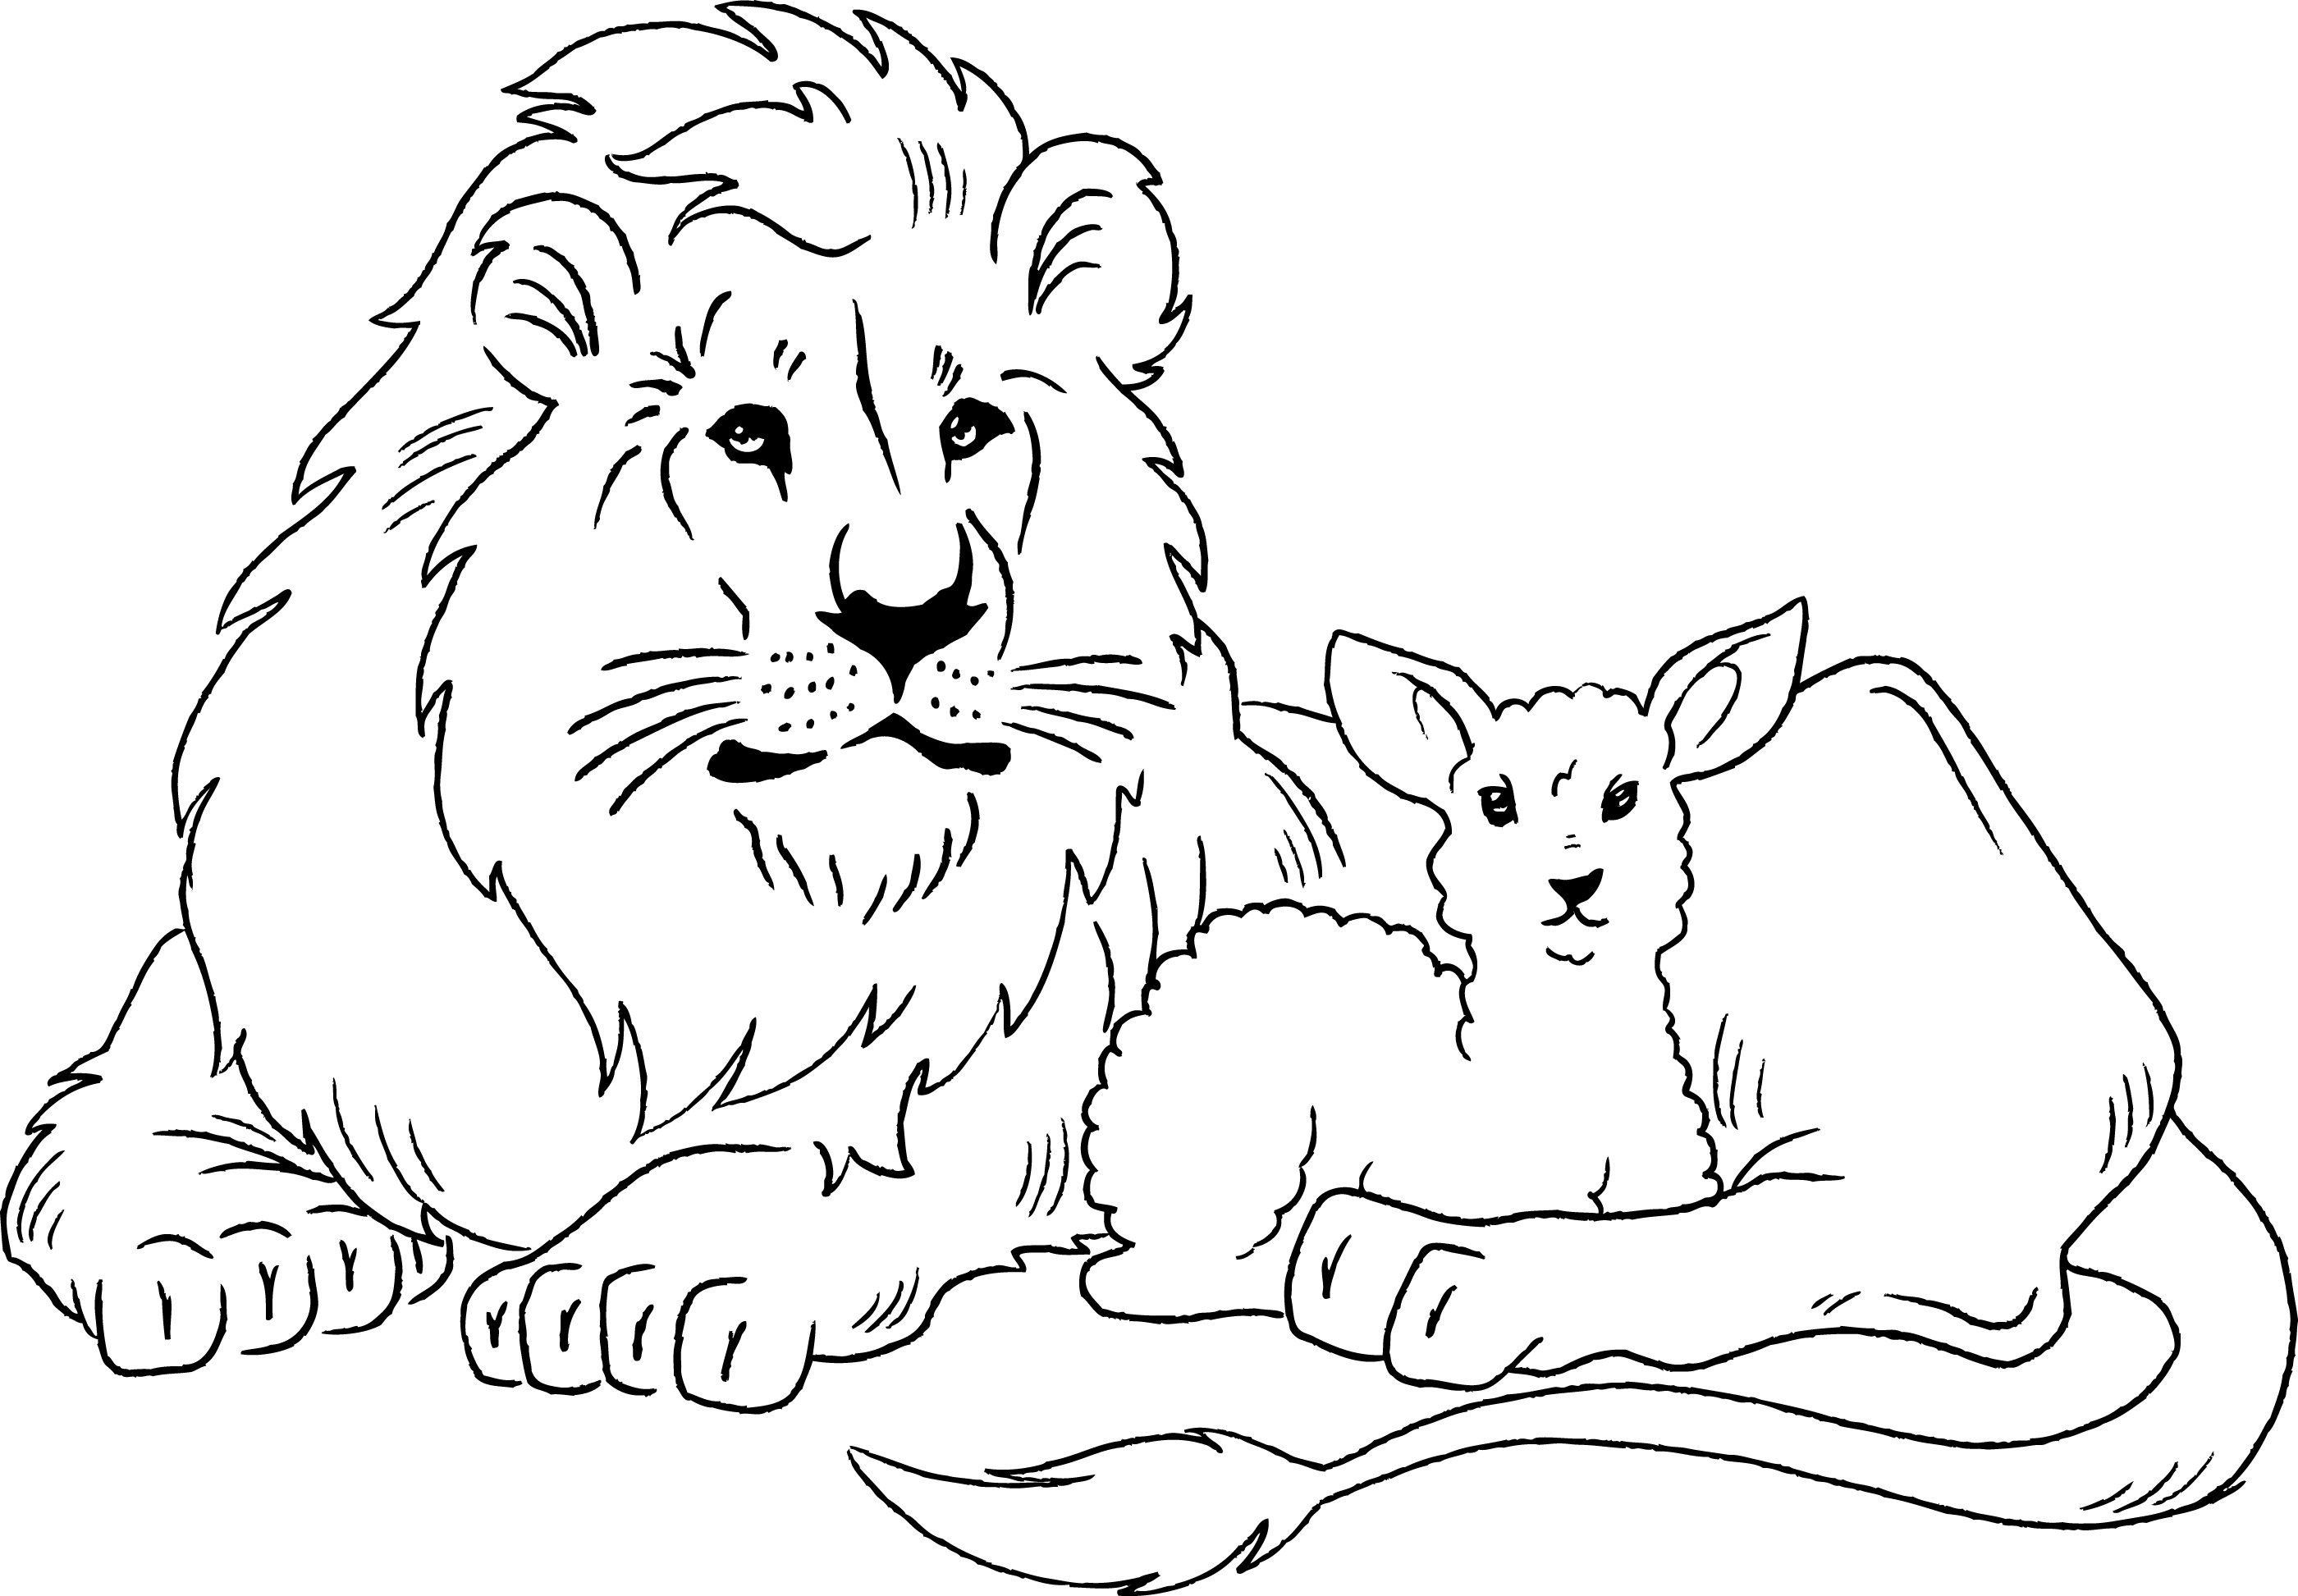 Иллюстрация к произведению лев и собачка - 79 фото